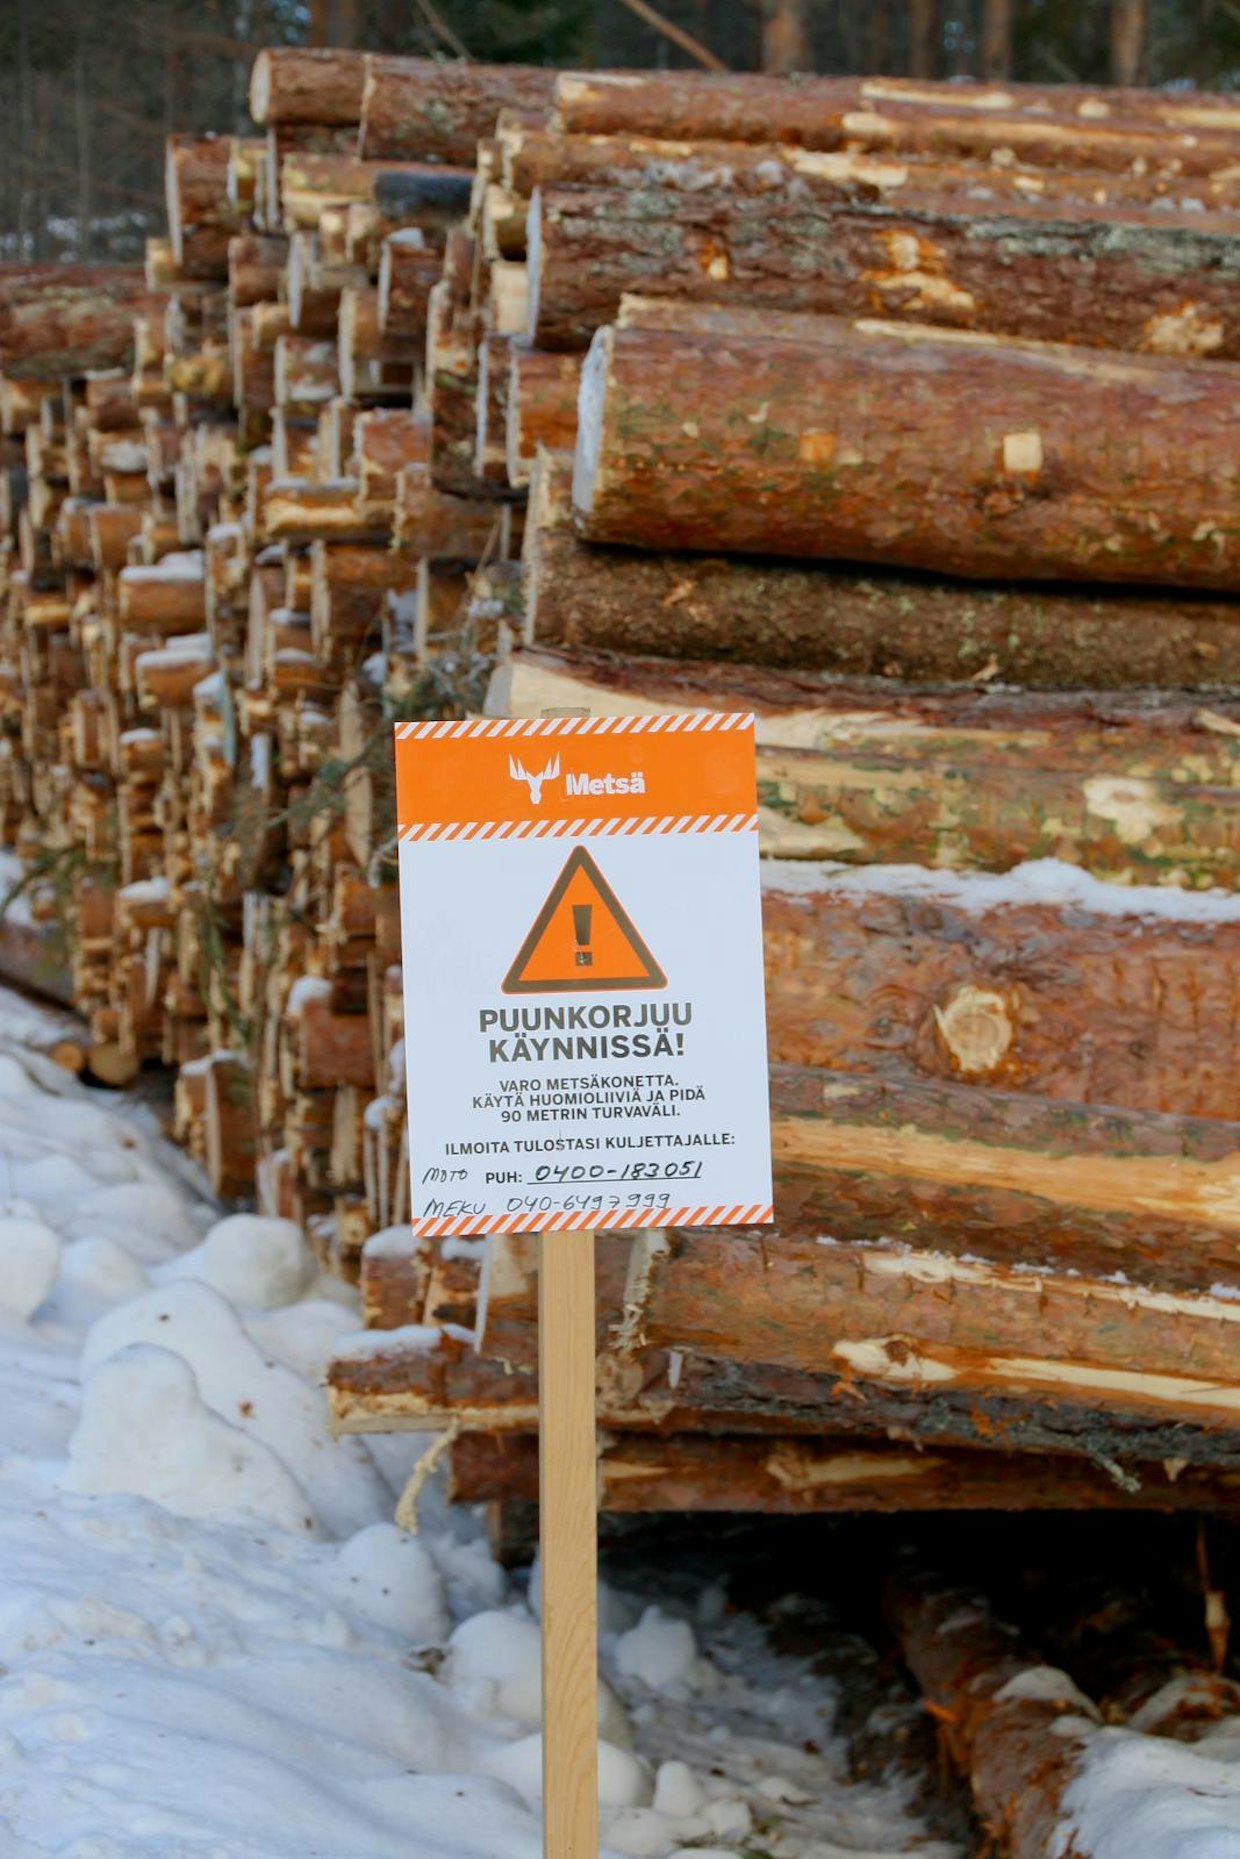 Biotalous tarvitsee puuta raaka-aineekseen. Suomen metsissä kasvava ja hiiltä sitova nuori puusto on hyödynnettävissä monipuolisesti käyttöön. Metsä Groupin uusi tehdas Äänekoskella on esimerkki myös siitä, miten biomassaa voidaan hyödyntää mahdollisimman ympäristöystävällisesti.